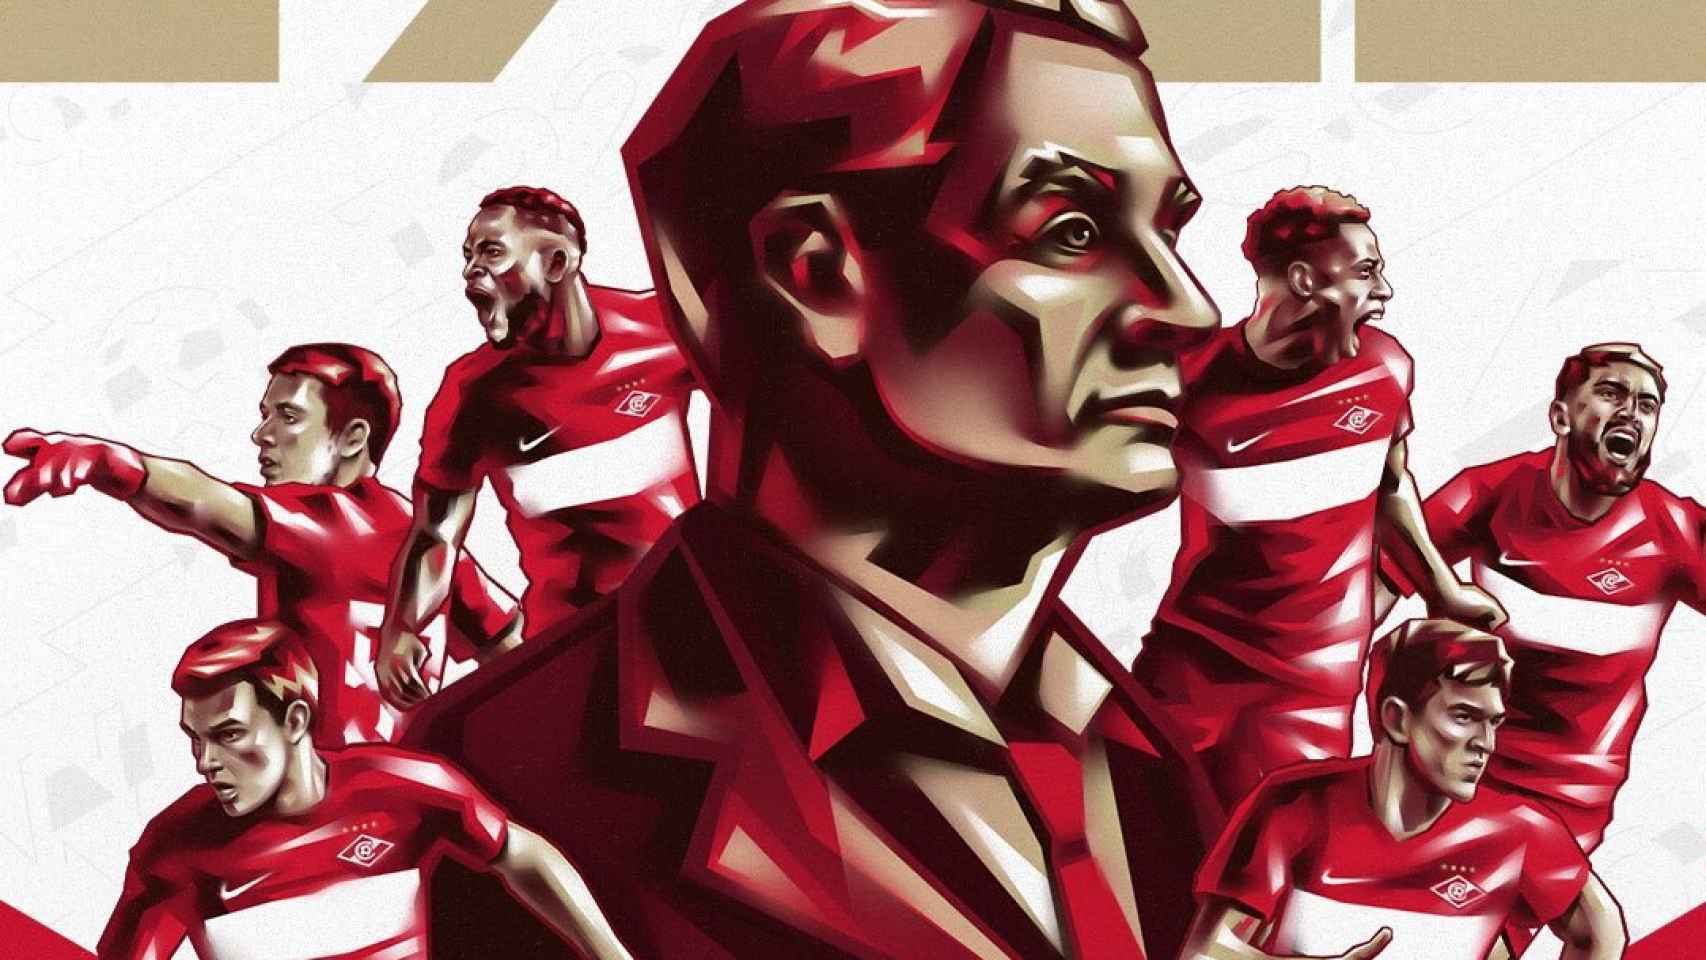 Cartel promocional por los 100 años del Spartak de Moscú